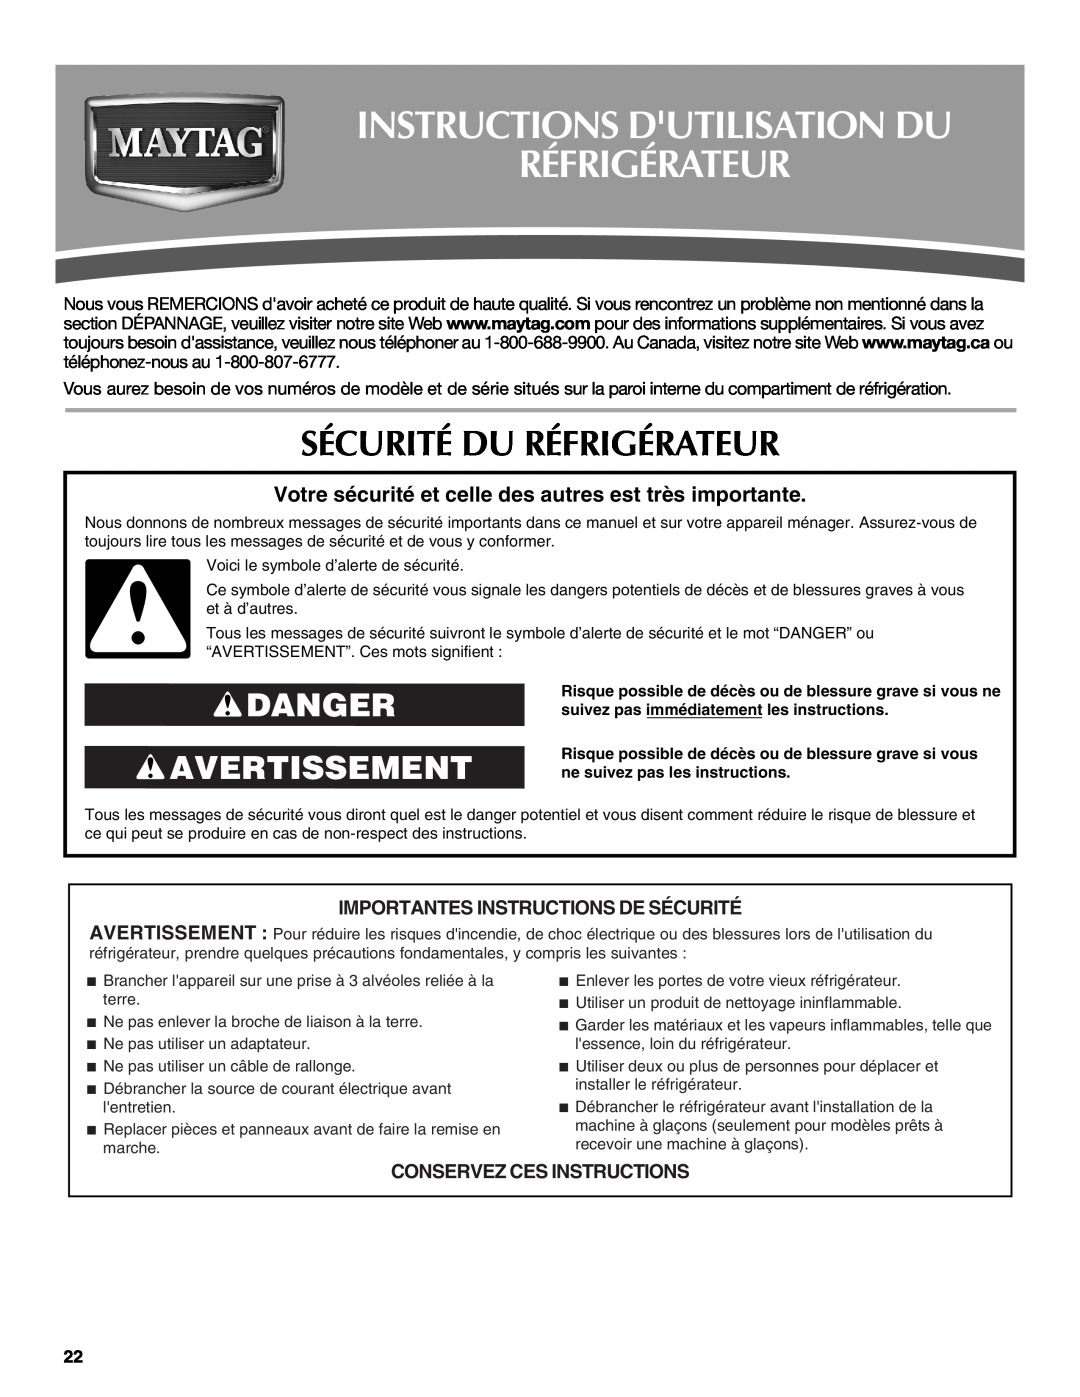 Maytag MBL2556KES Instructions Dutilisation Du Réfrigérateur, Sécurité Du Réfrigérateur, Danger Avertissement 